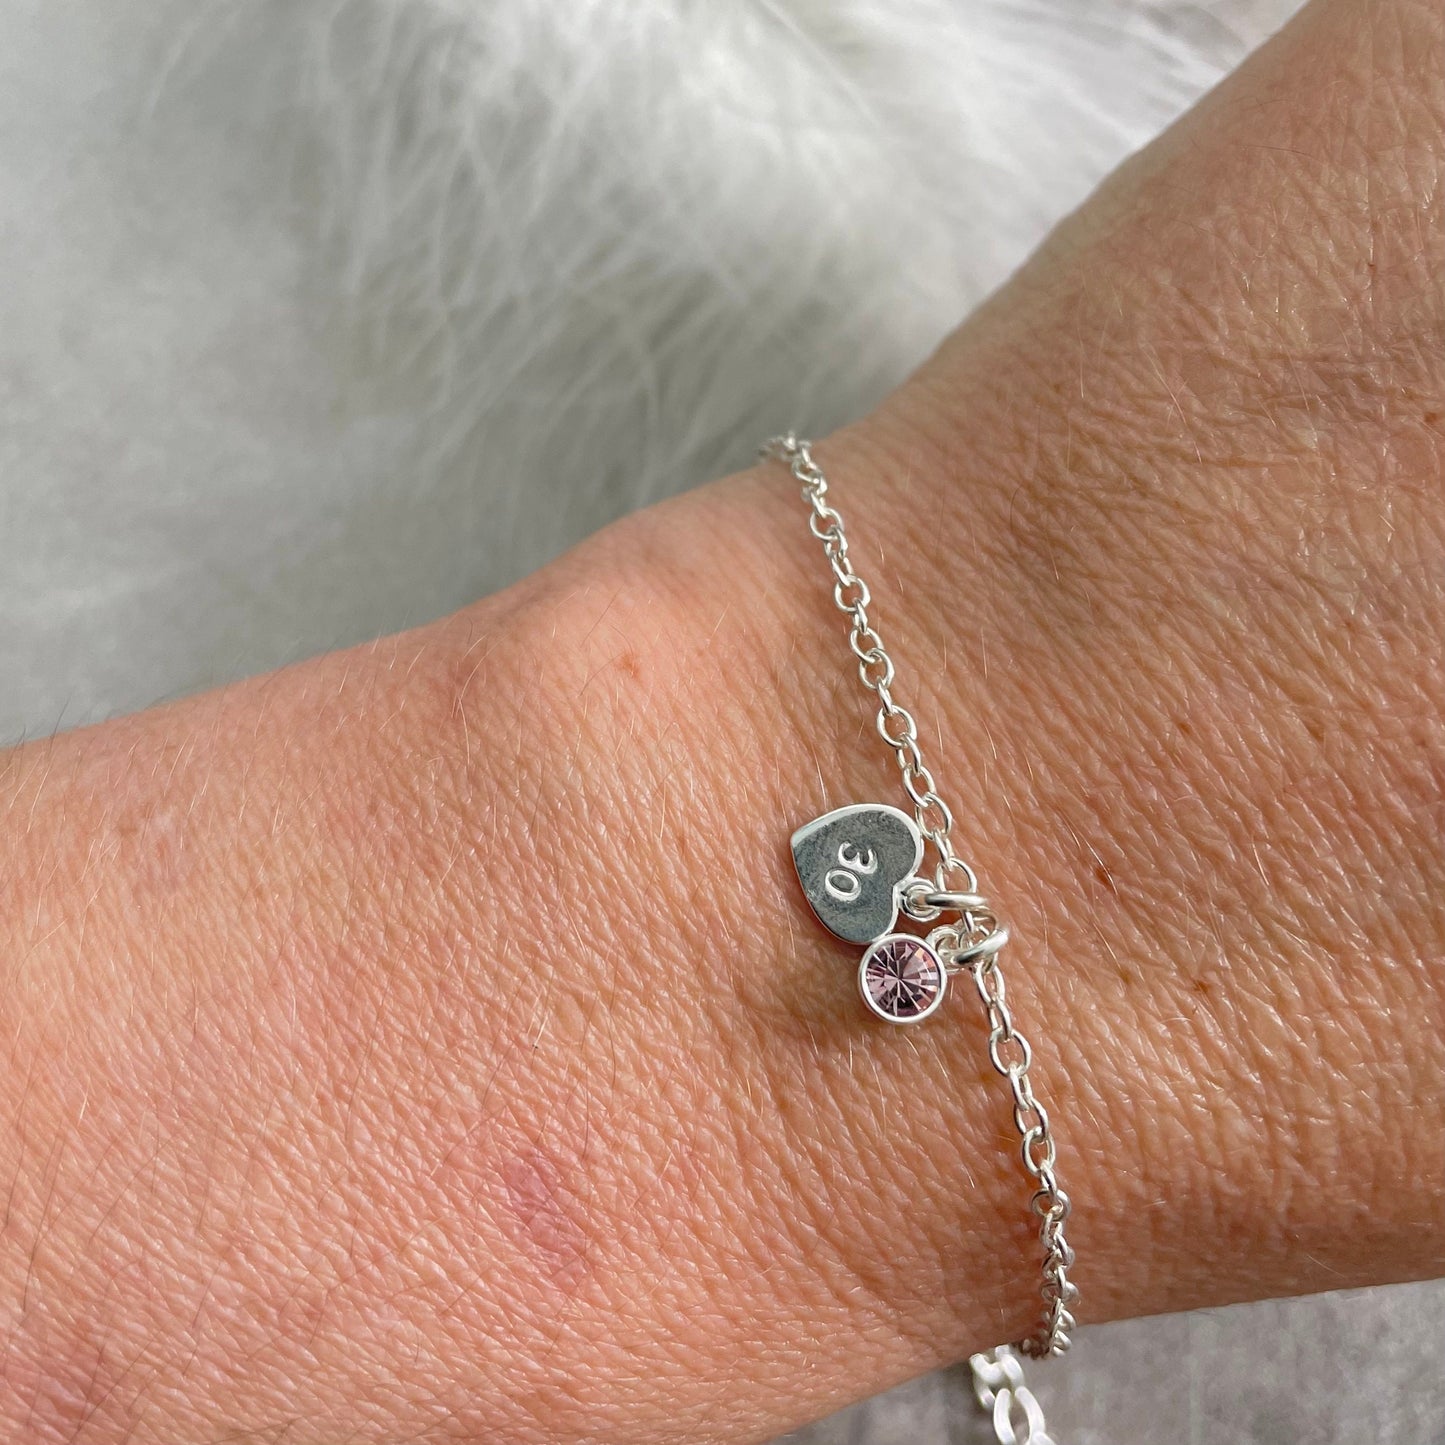 Dainty Age & Birthstone Bracelet, Sterling Silver Chain Milestone Jewellery for women